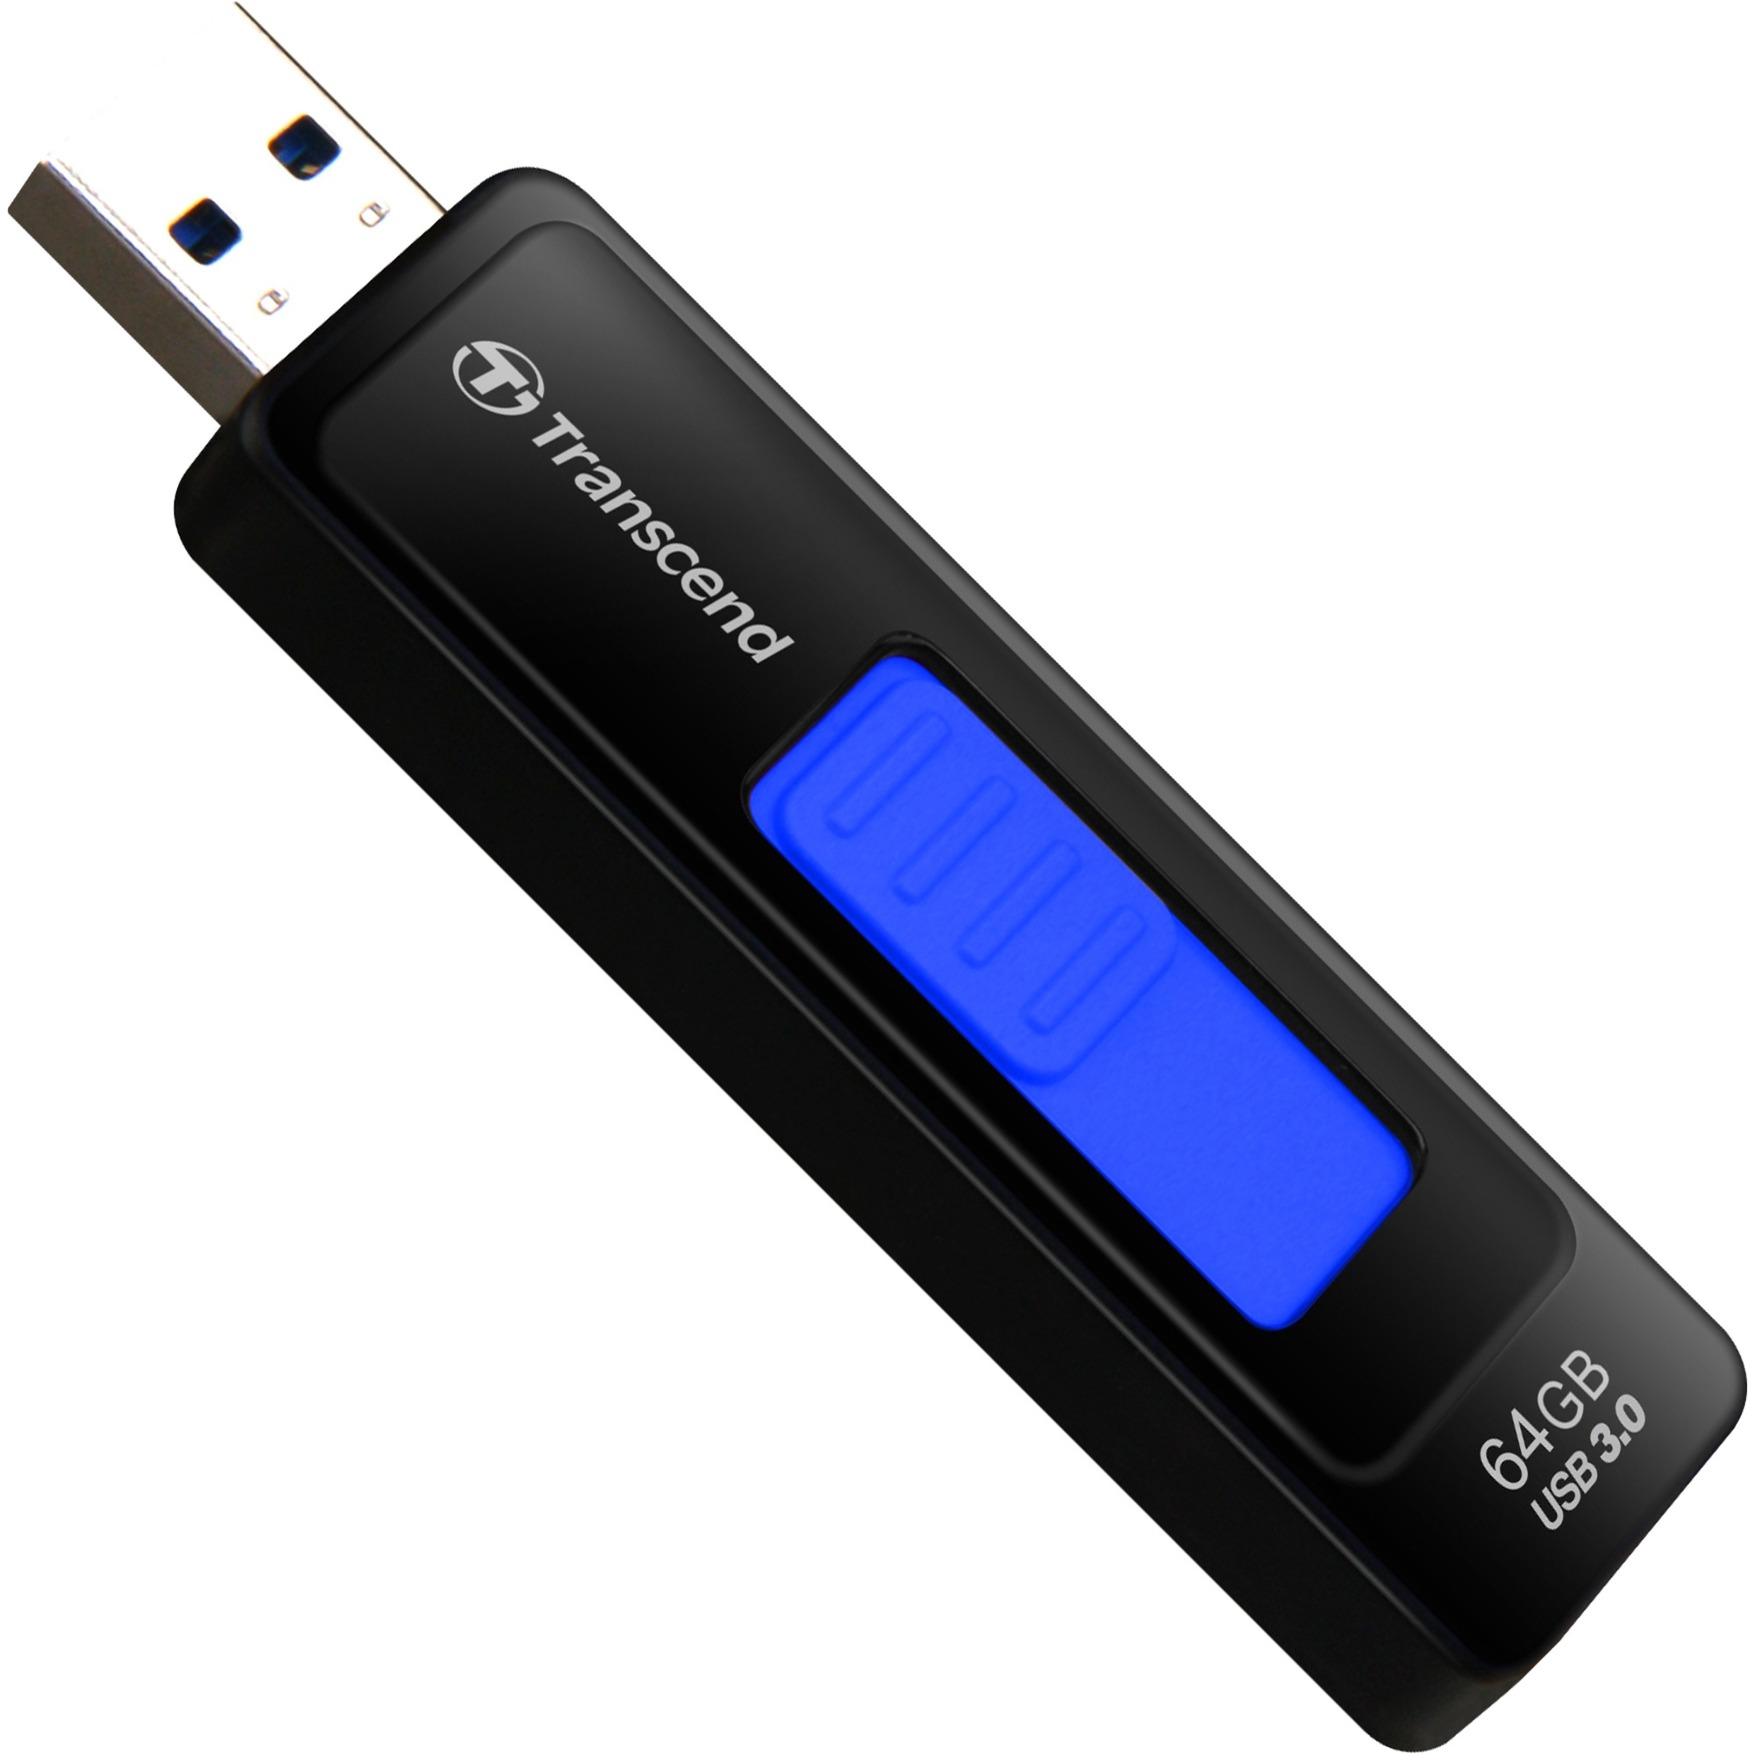 Image of Alternate - JetFlash 760 64 GB, USB-Stick online einkaufen bei Alternate